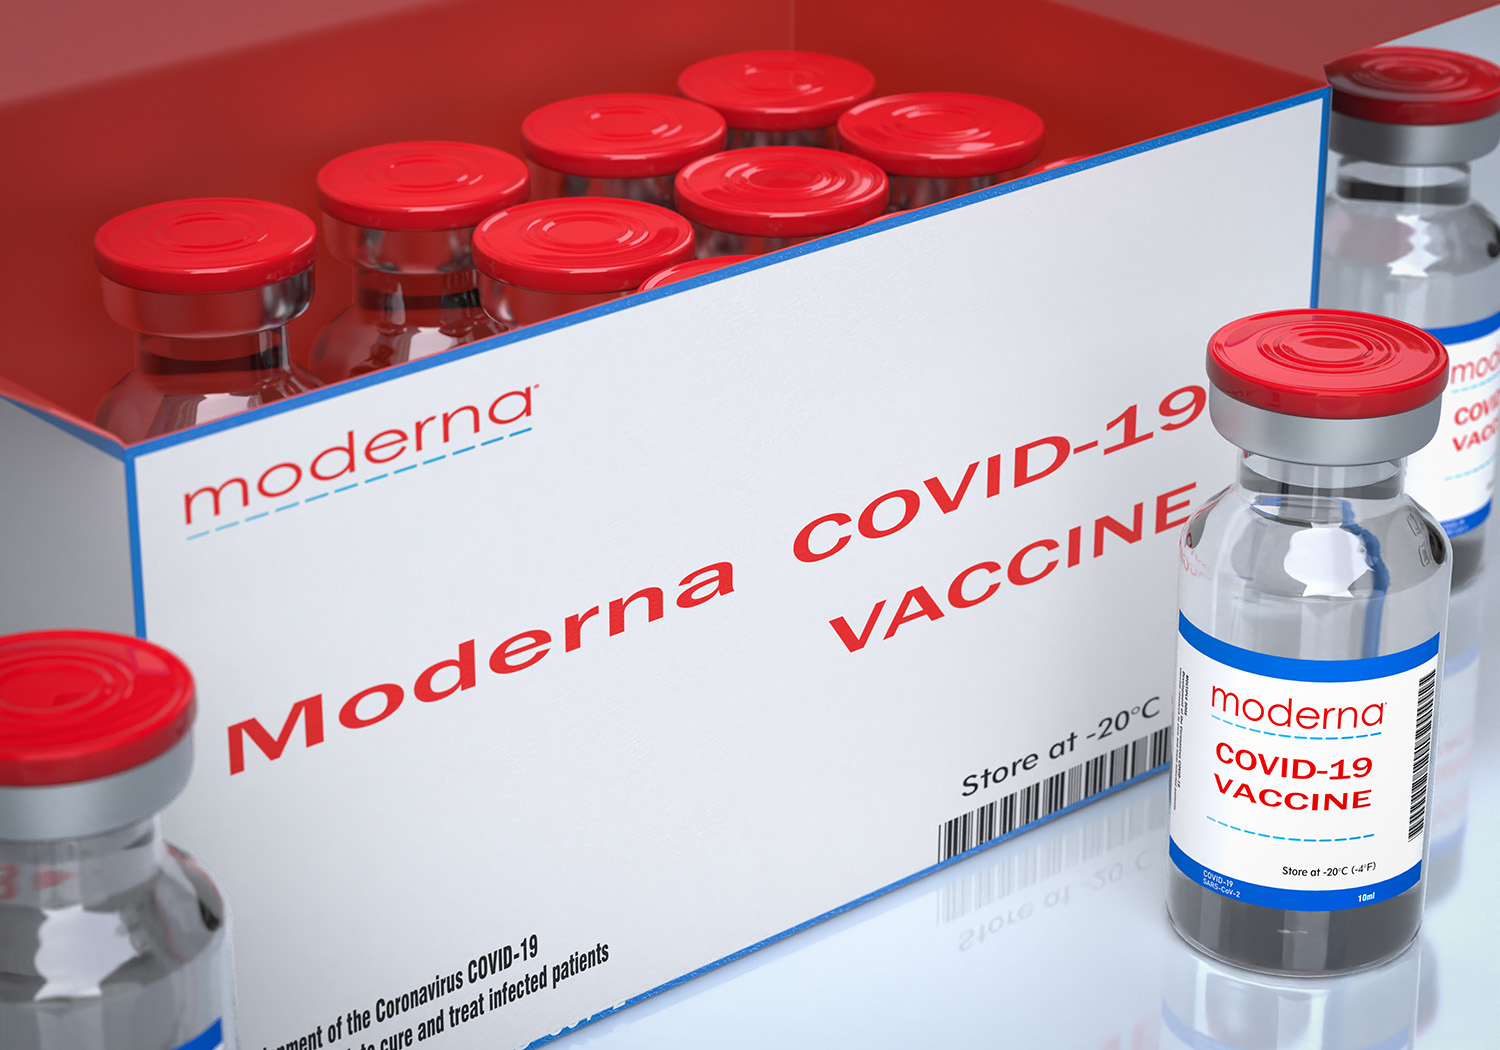 Für die Herbstsaison steht ein weiterer an die Omikron-Variante XBB.1.5 angepasster Covid-19-Impfstoff zur Verfügung. Die EU-Kommission hat heute (15.9.) die Zulassung für die Vakzine des Herstellers Moderna erteilt - die einen großen Vorteil haben könnte.